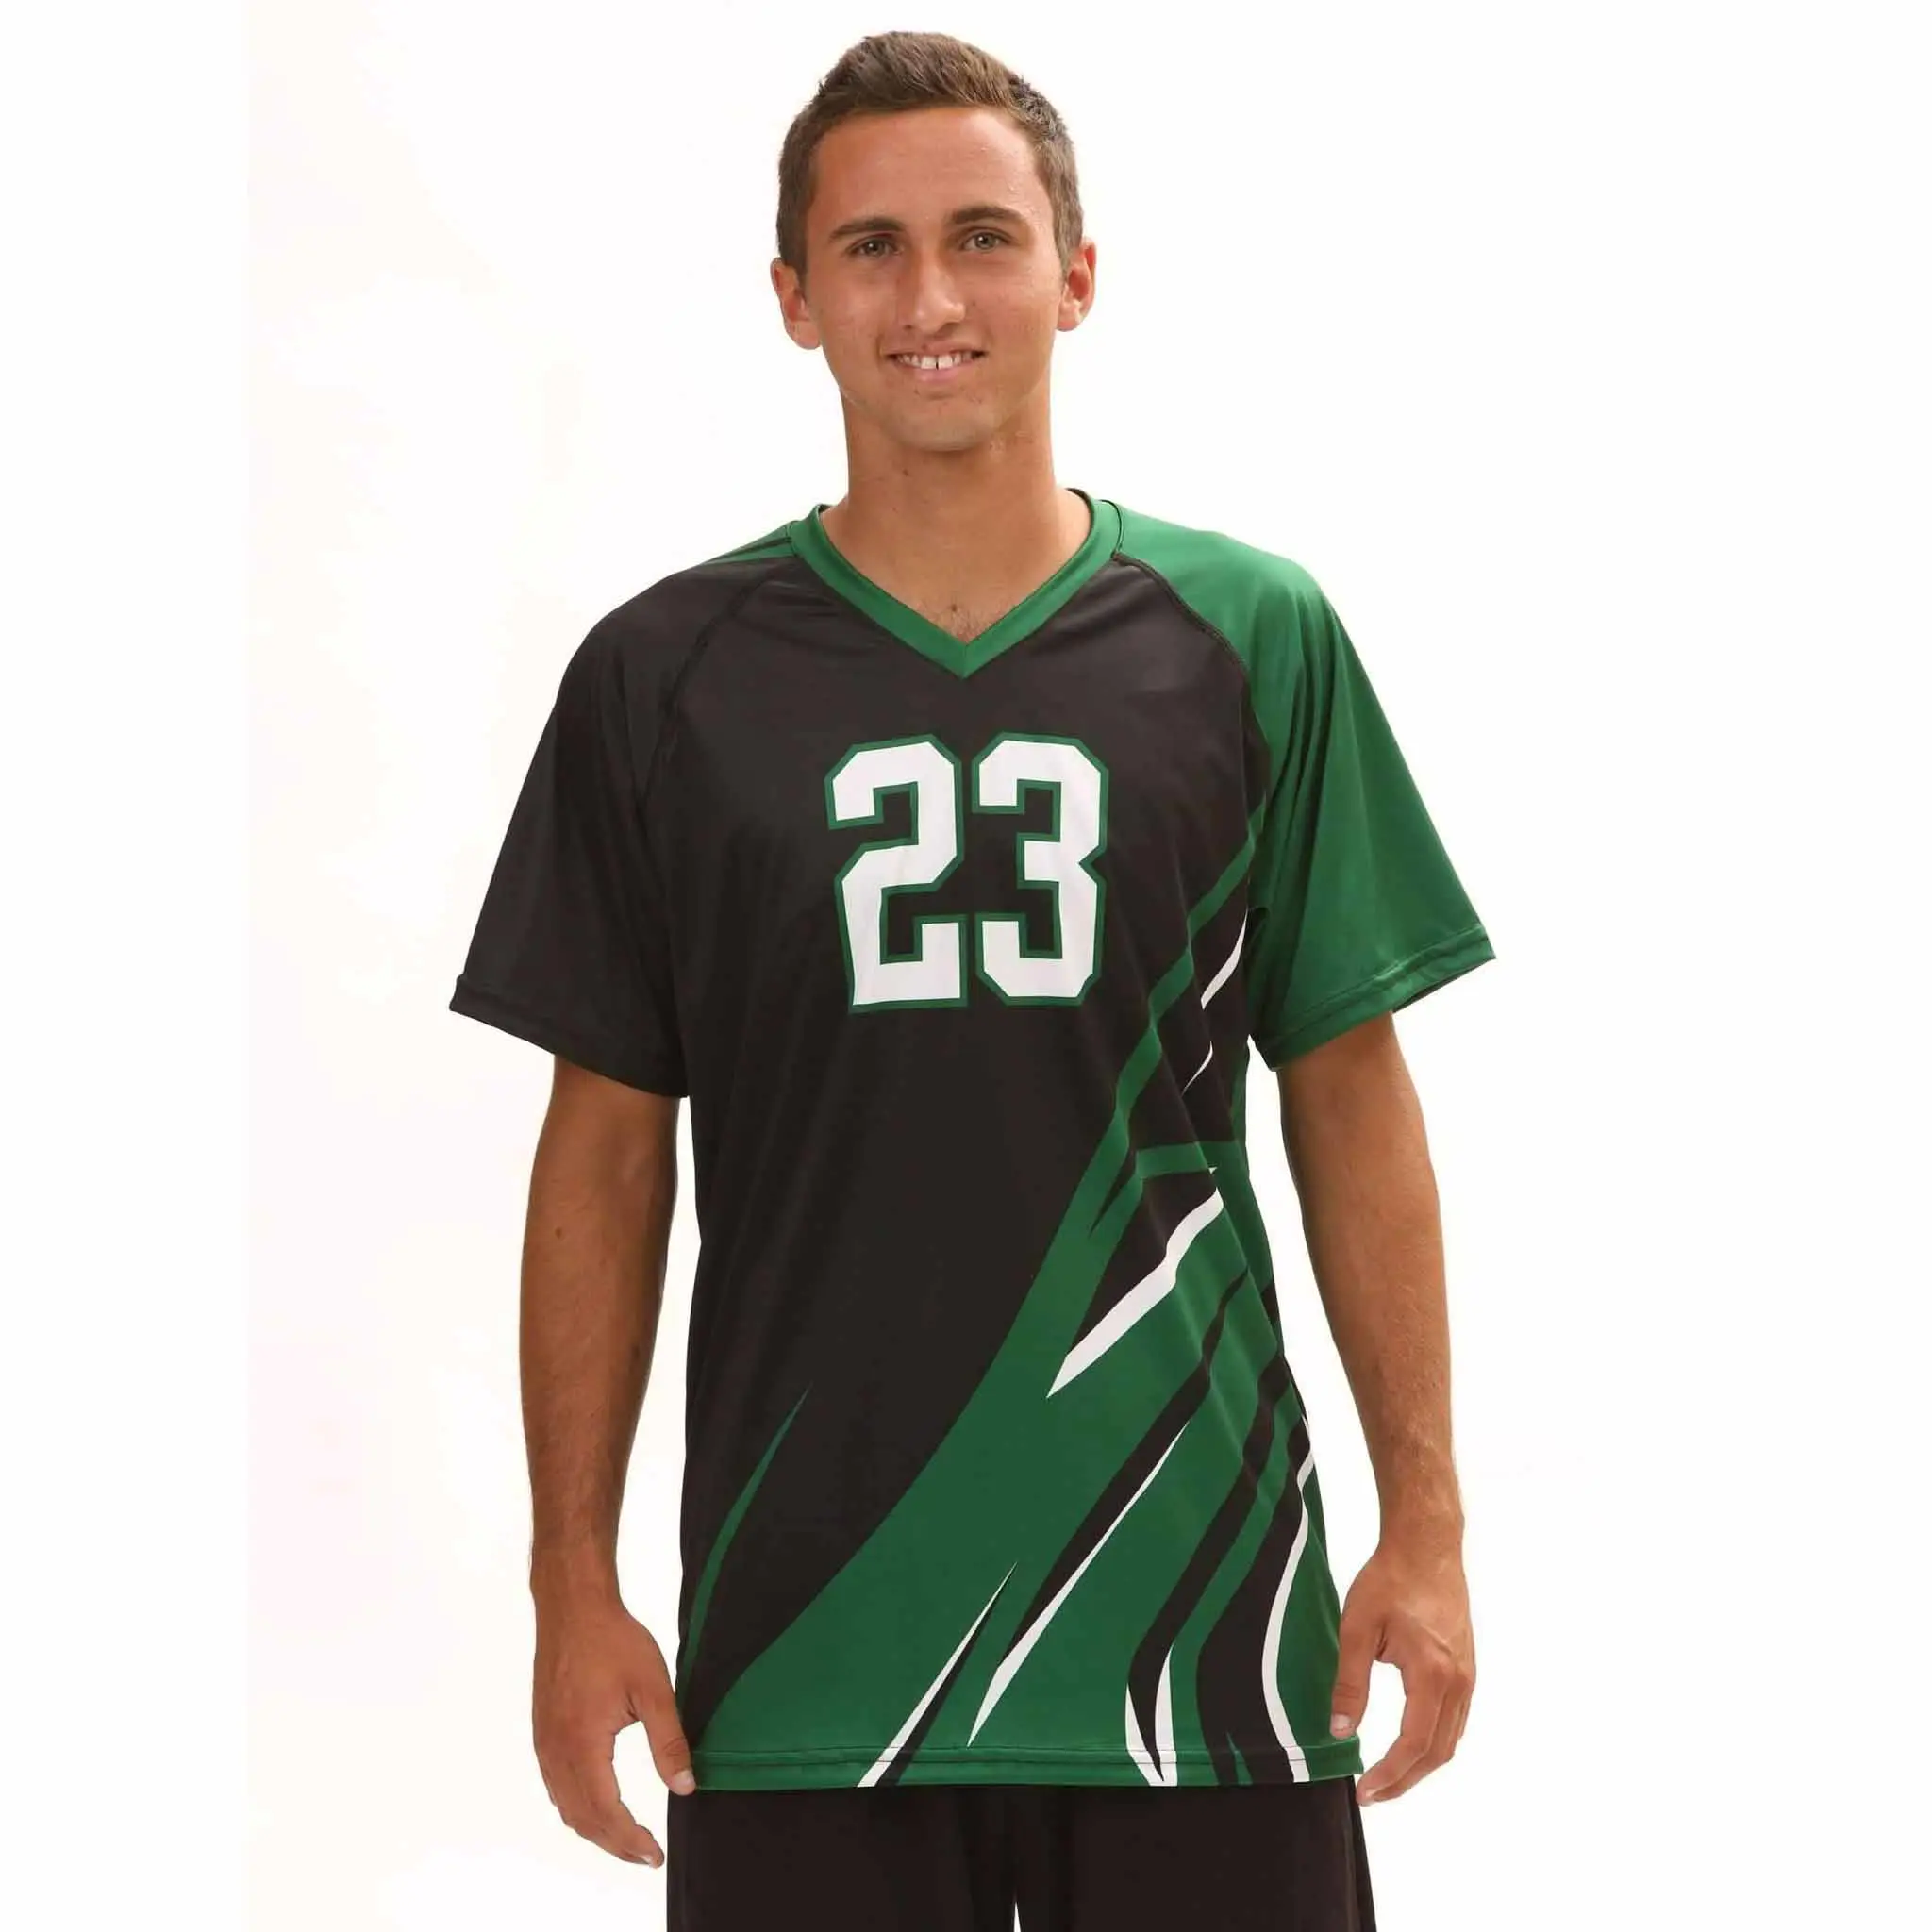 Mới nhất thiết kế riêng của bạn bóng chuyền thể thao giá rẻ đồng phục bóng chuyền bãi biển không tay thăng hoa đồng phục bóng chuyền